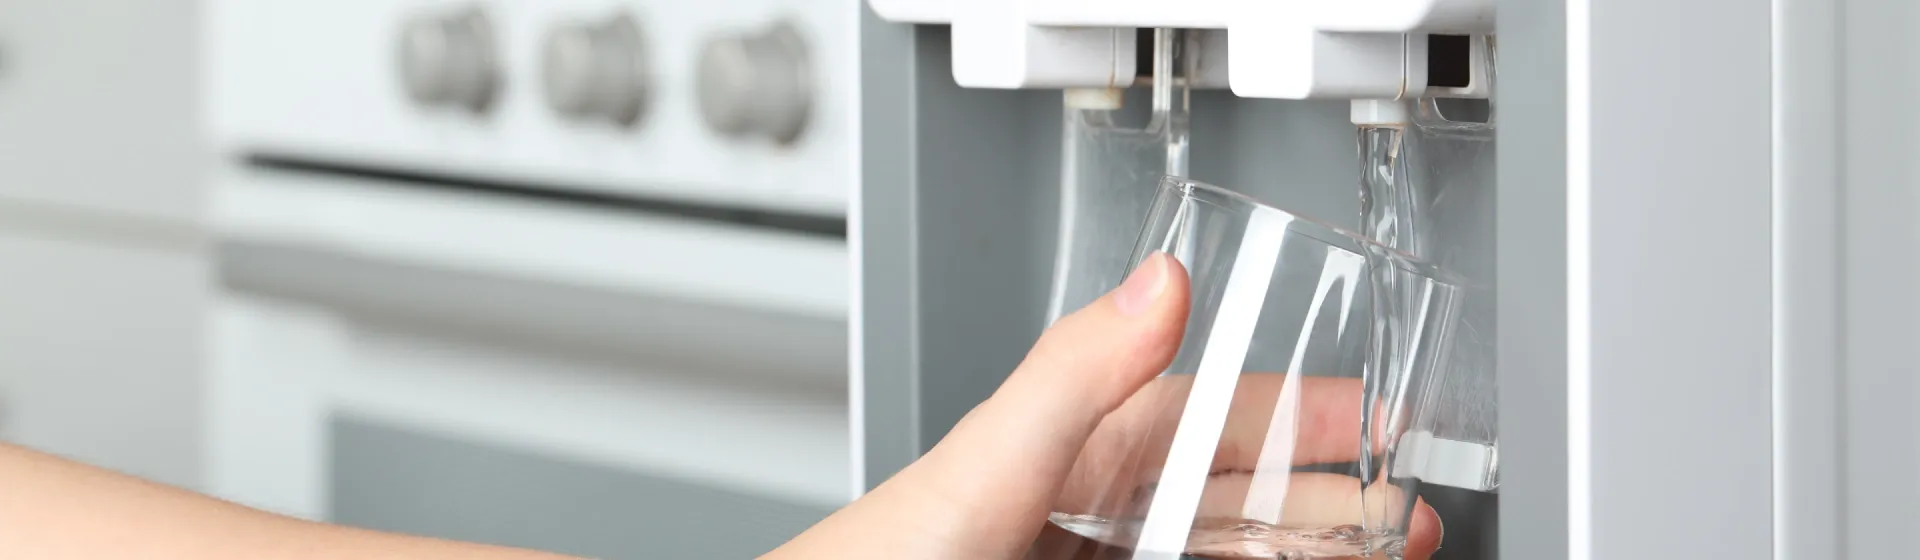 Mão segurando um copo de água, que está sendo enchido em um purificador de água